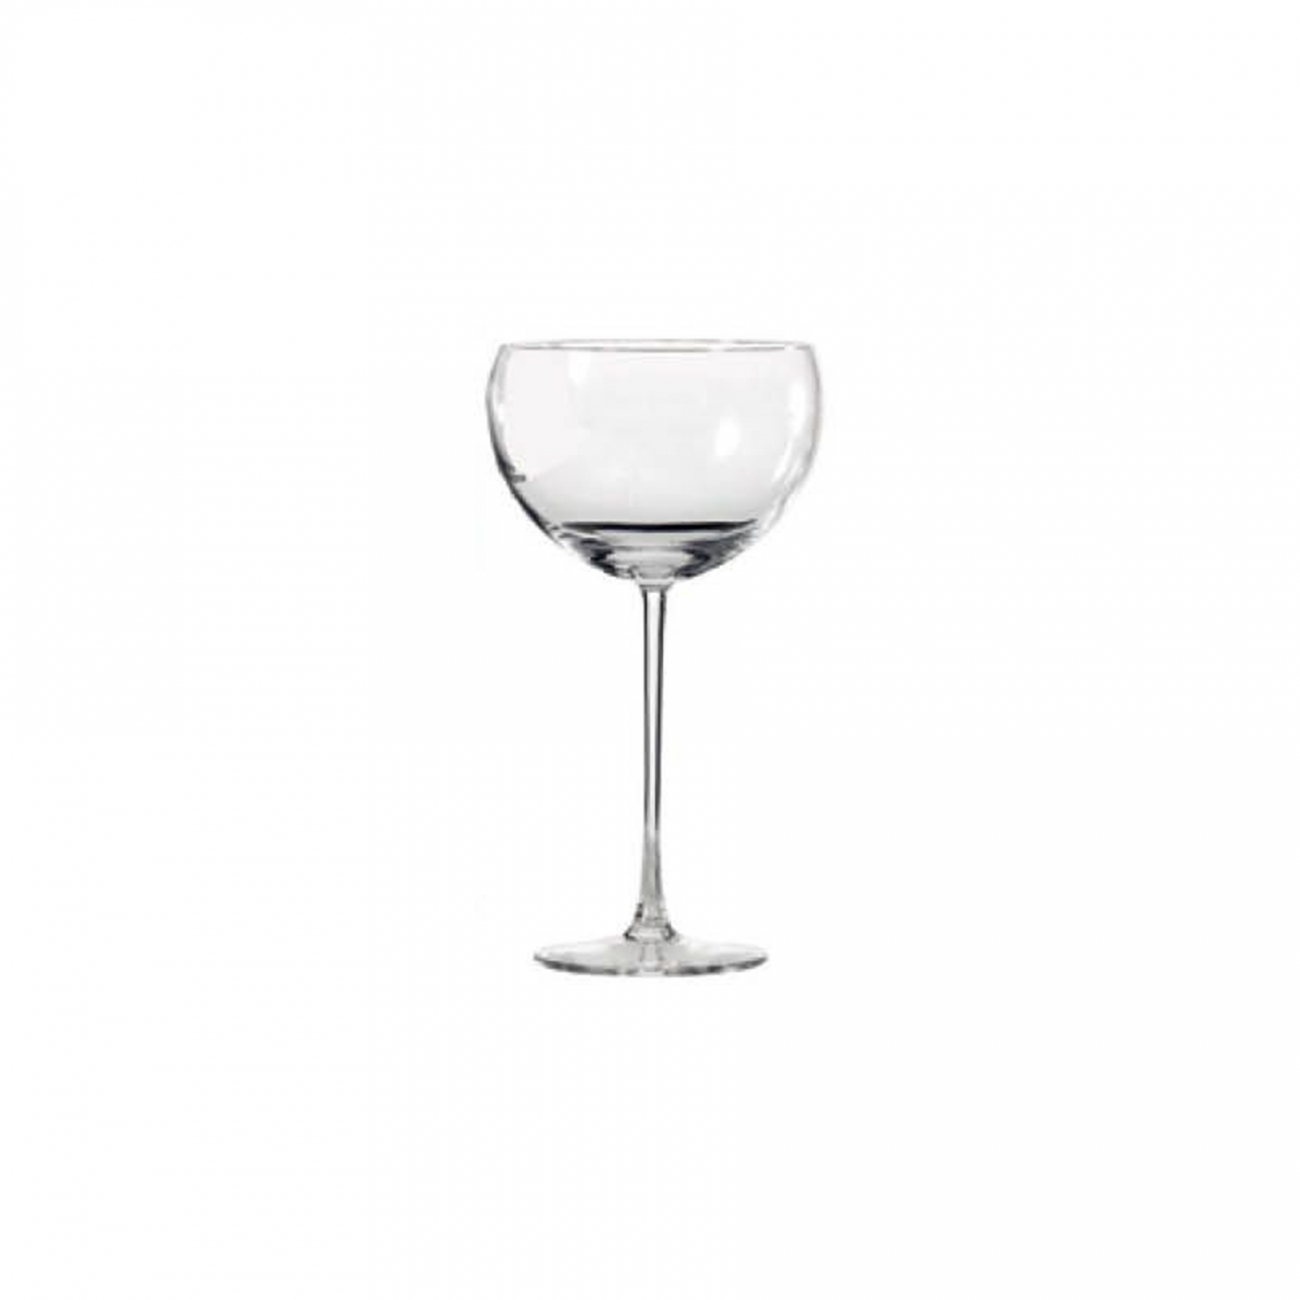 Driade La Sfera Wine Glass